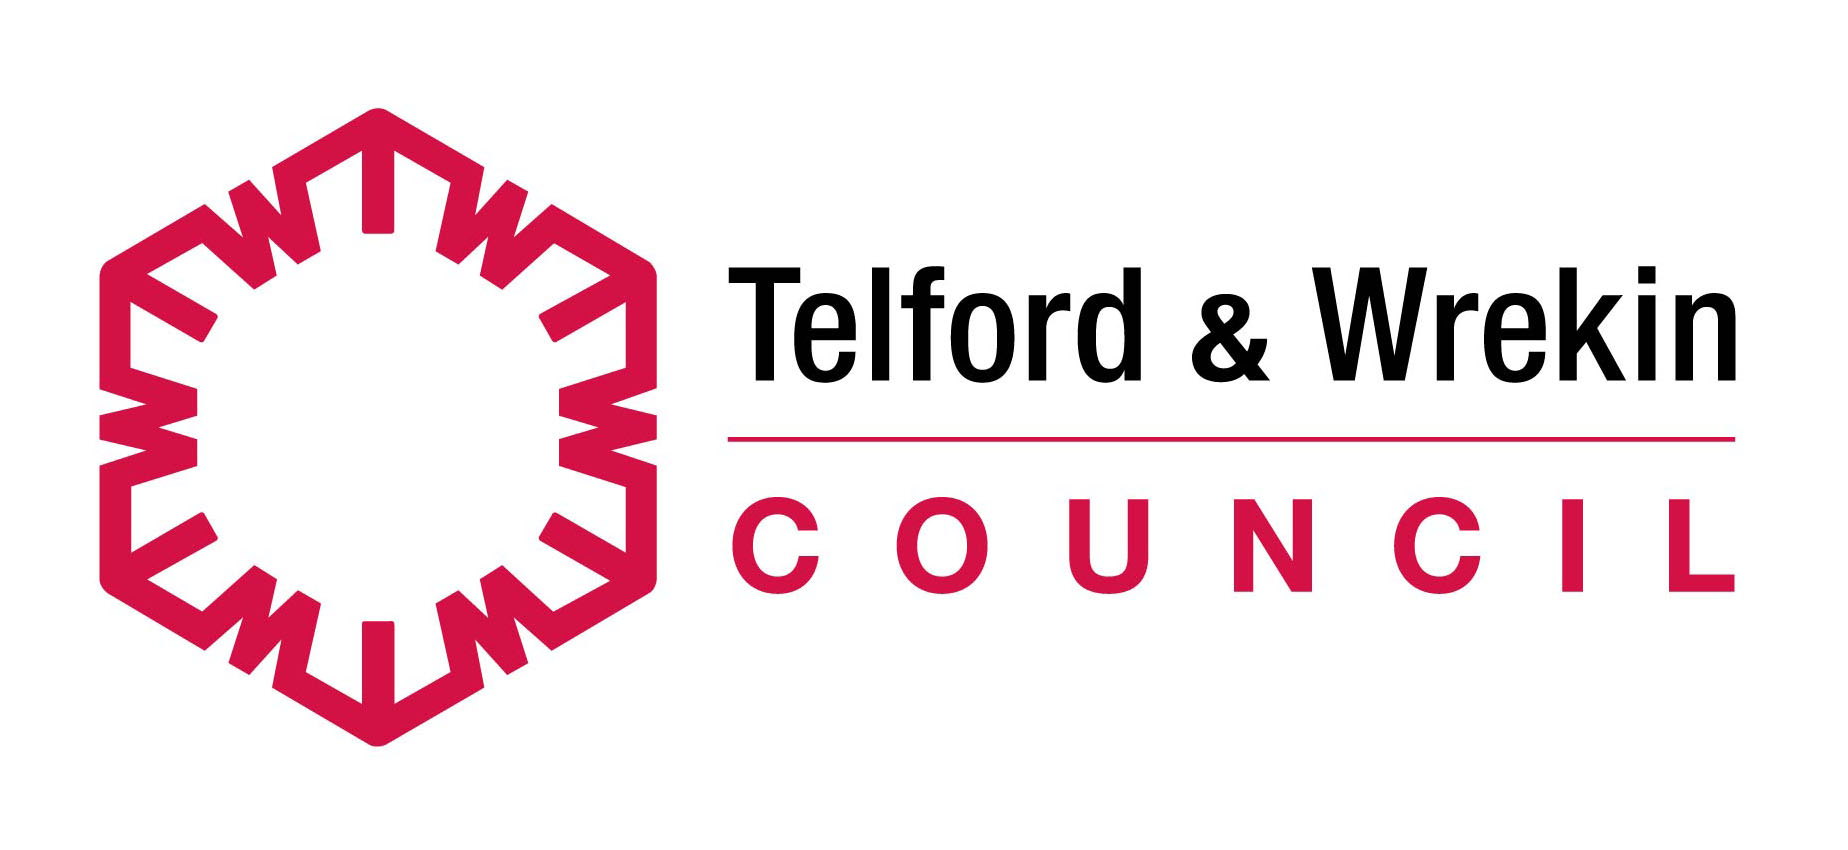 Telford-Wrekin-Council-Logo-JPEG.jpg